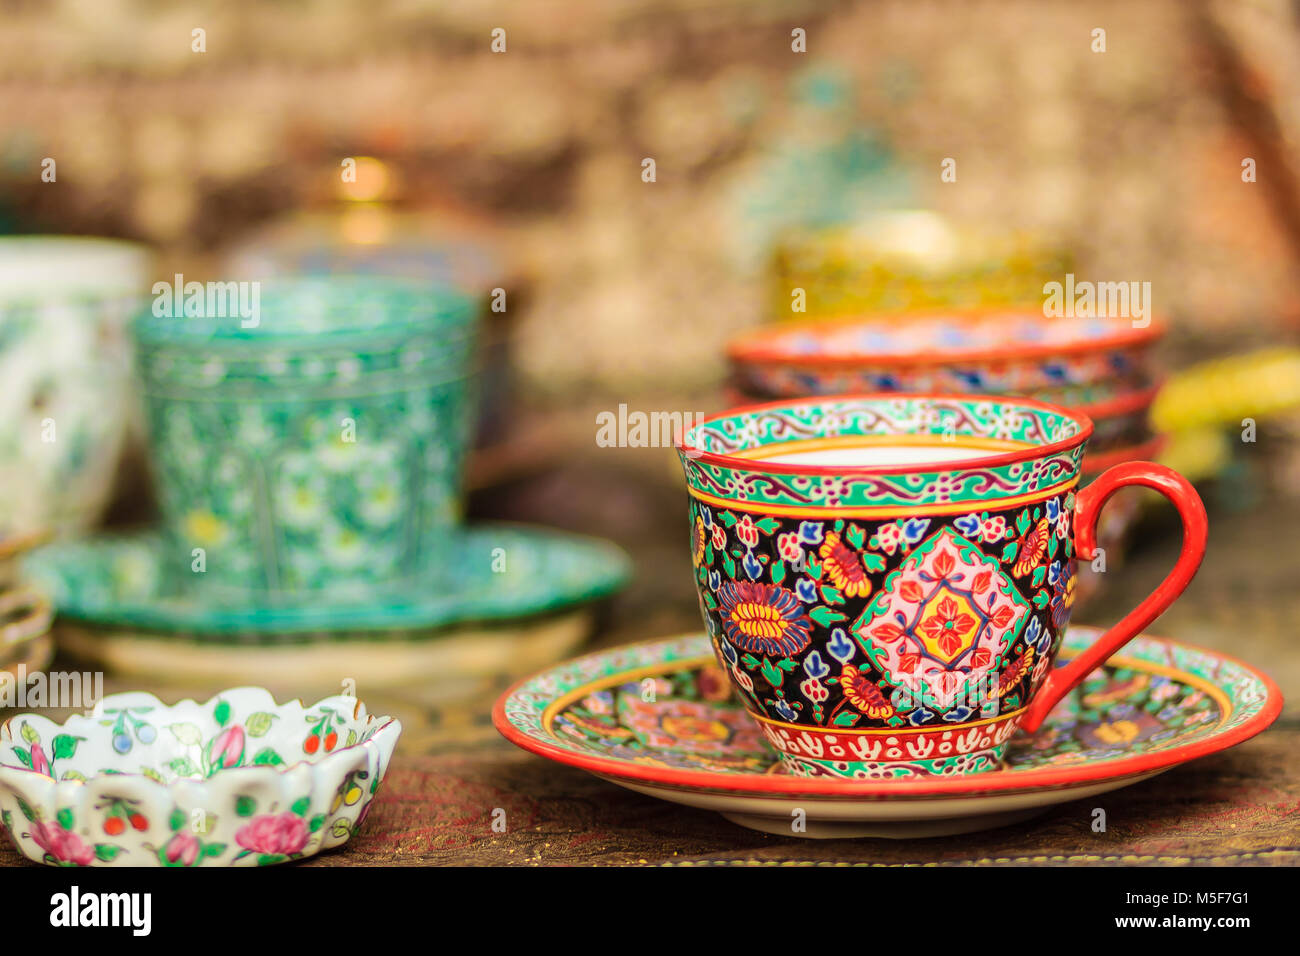 Die Vintage im thailändischen Stil Porzellan Tasse handgefertigt. Schöne  traditionelle Thailändische 5-farbige Porzellan Keramik Kaffeetasse.  Benjarong Porzellan Kaffee c Stockfotografie - Alamy